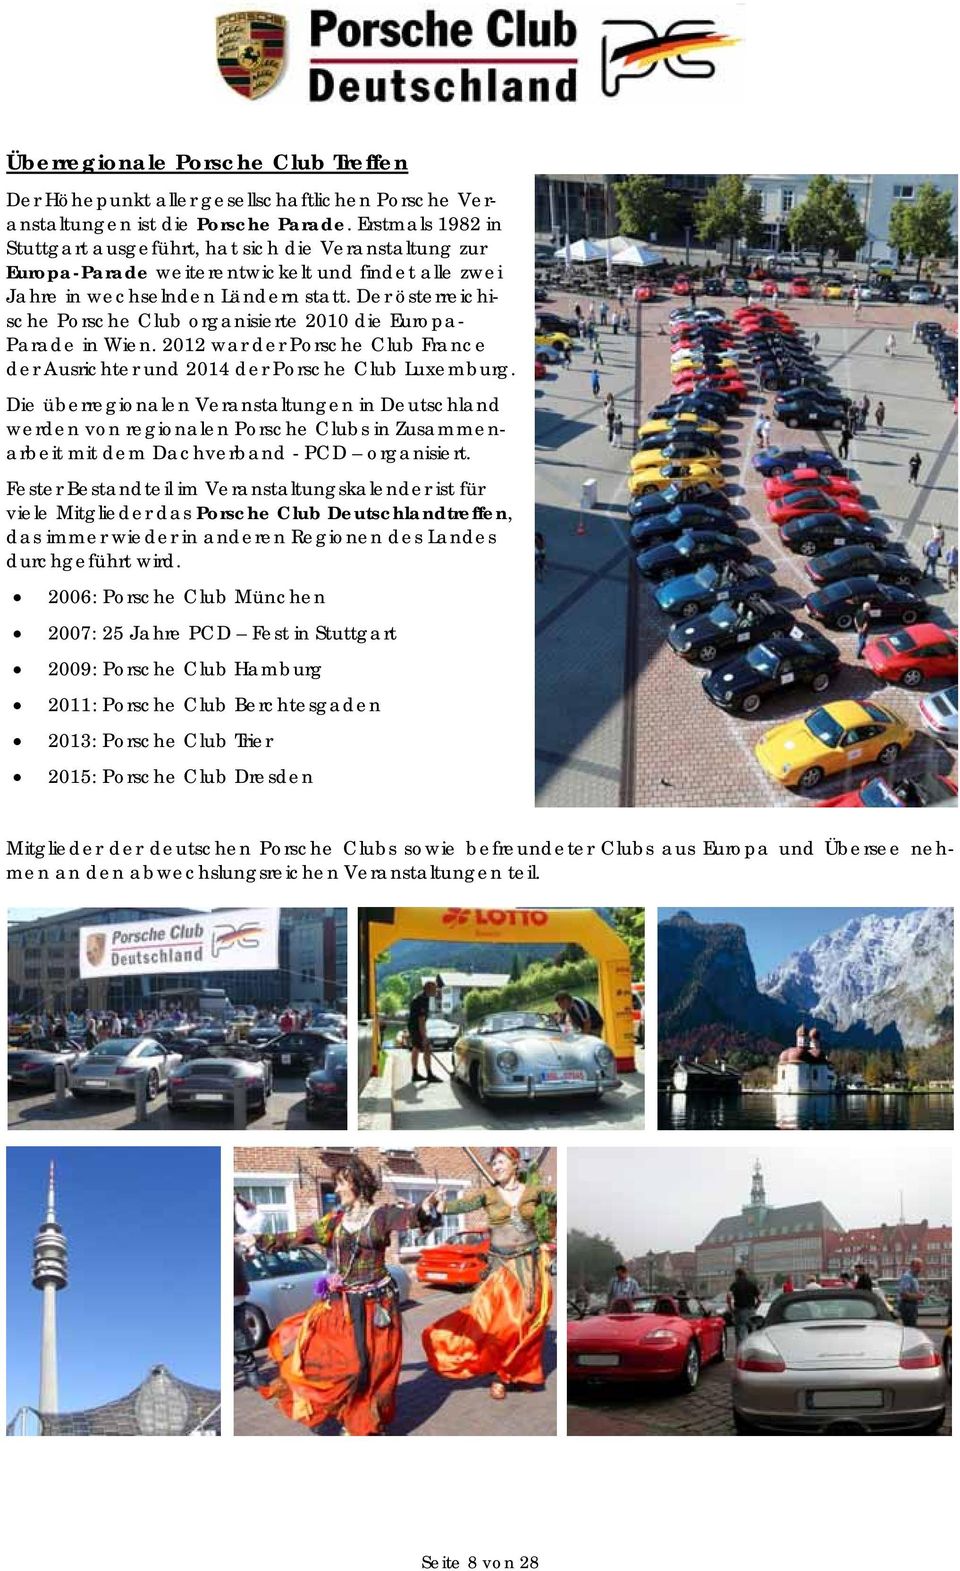 Der österreichische Porsche Club organisierte 2010 die Europa- Parade in Wien. 2012 war der Porsche Club France der Ausrichter und 2014 der Porsche Club Luxemburg.